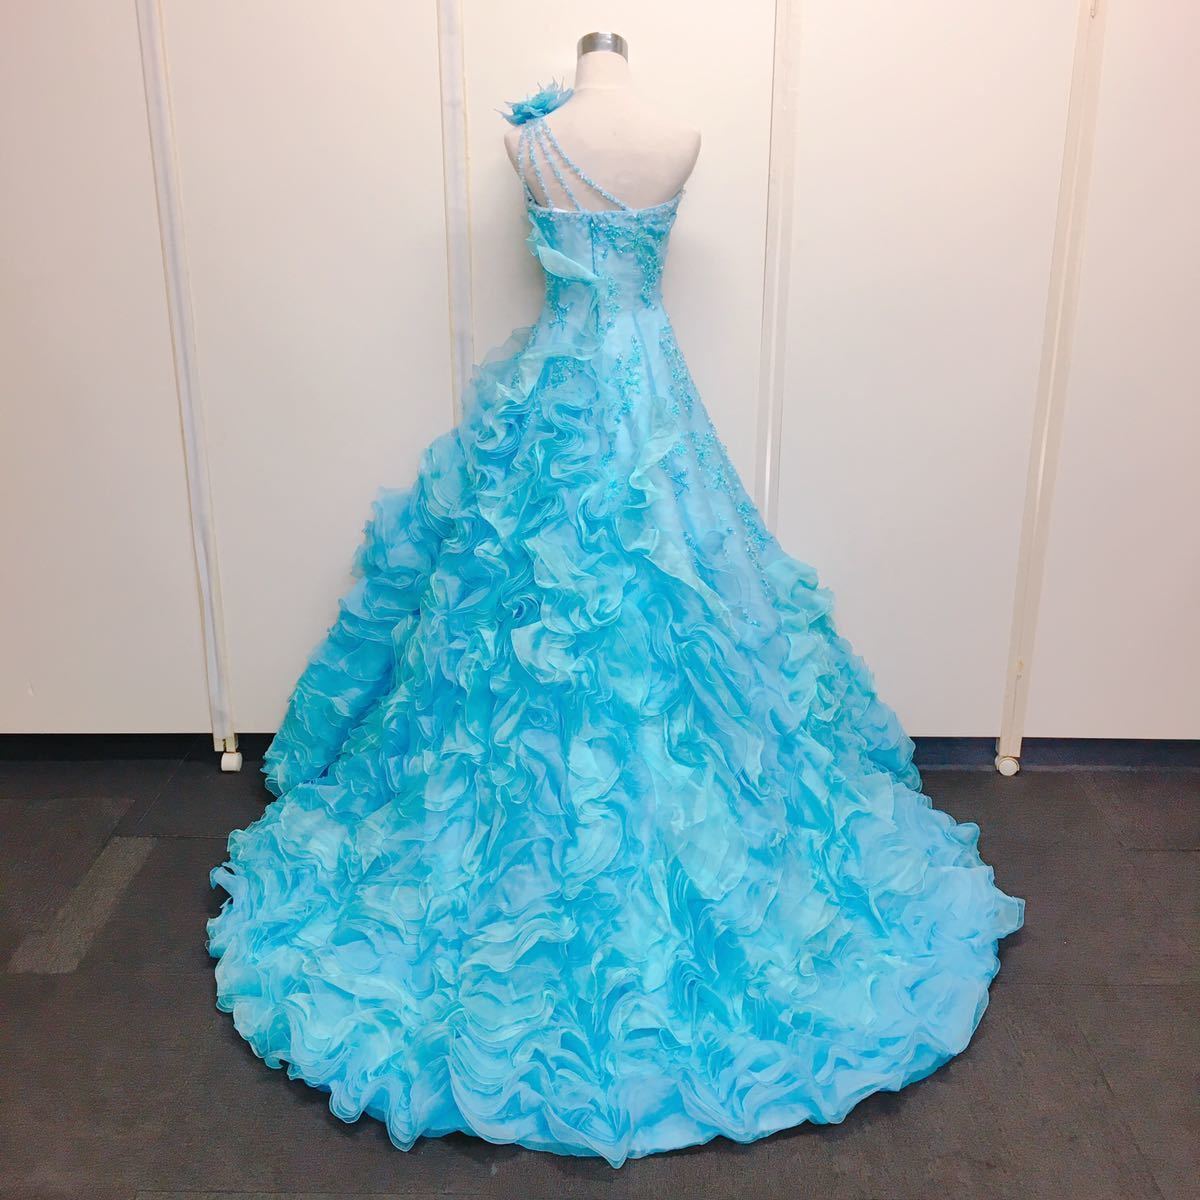 17 Sugar Kei ウェディングドレス カラードレス FY912 ブルー 11T 